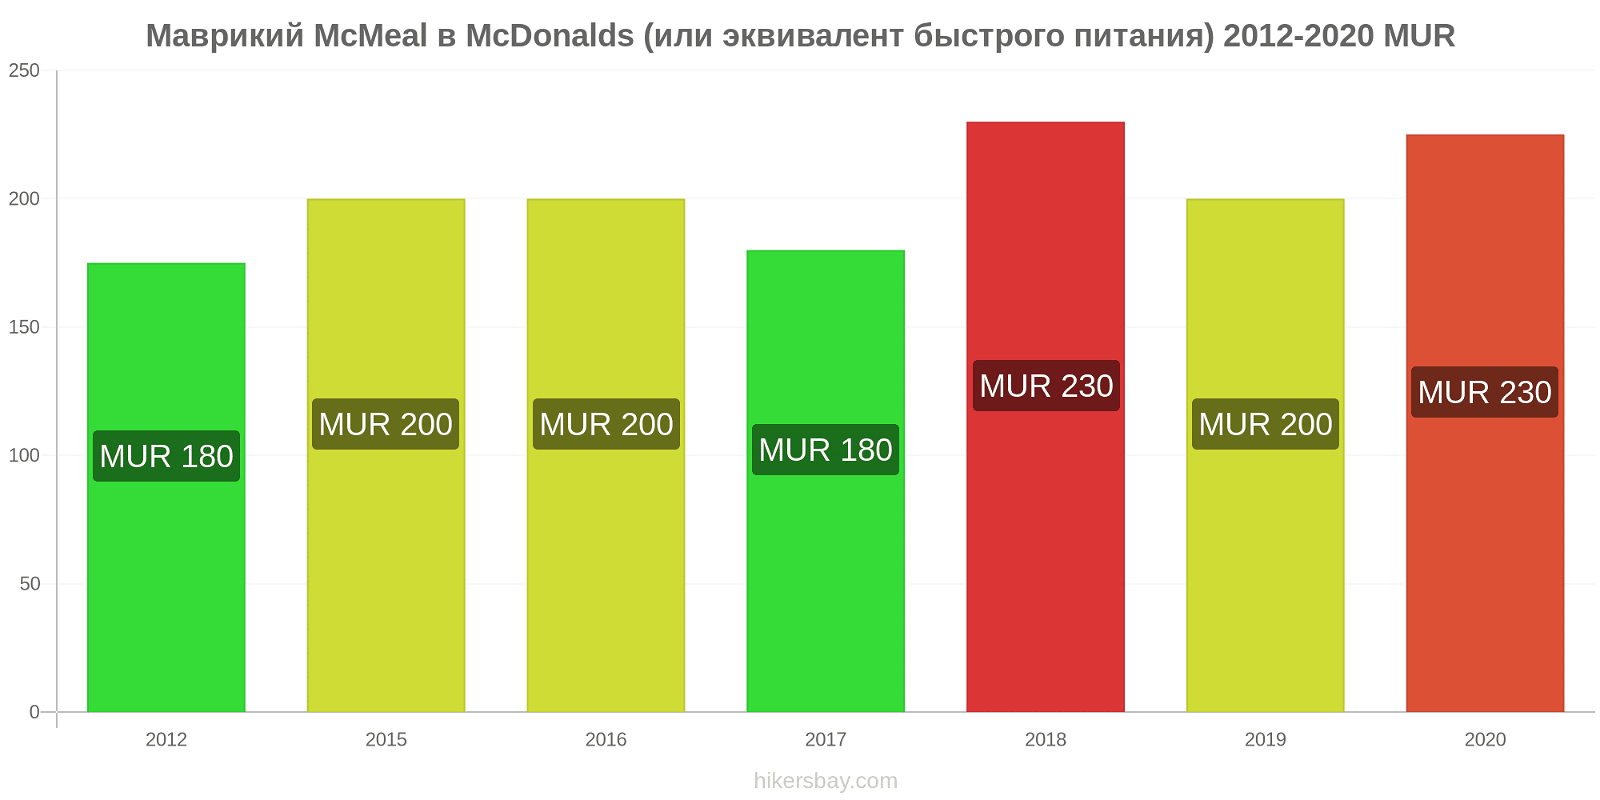 Маврикий изменения цен McMeal в McDonalds (или эквивалент быстрого питания) hikersbay.com